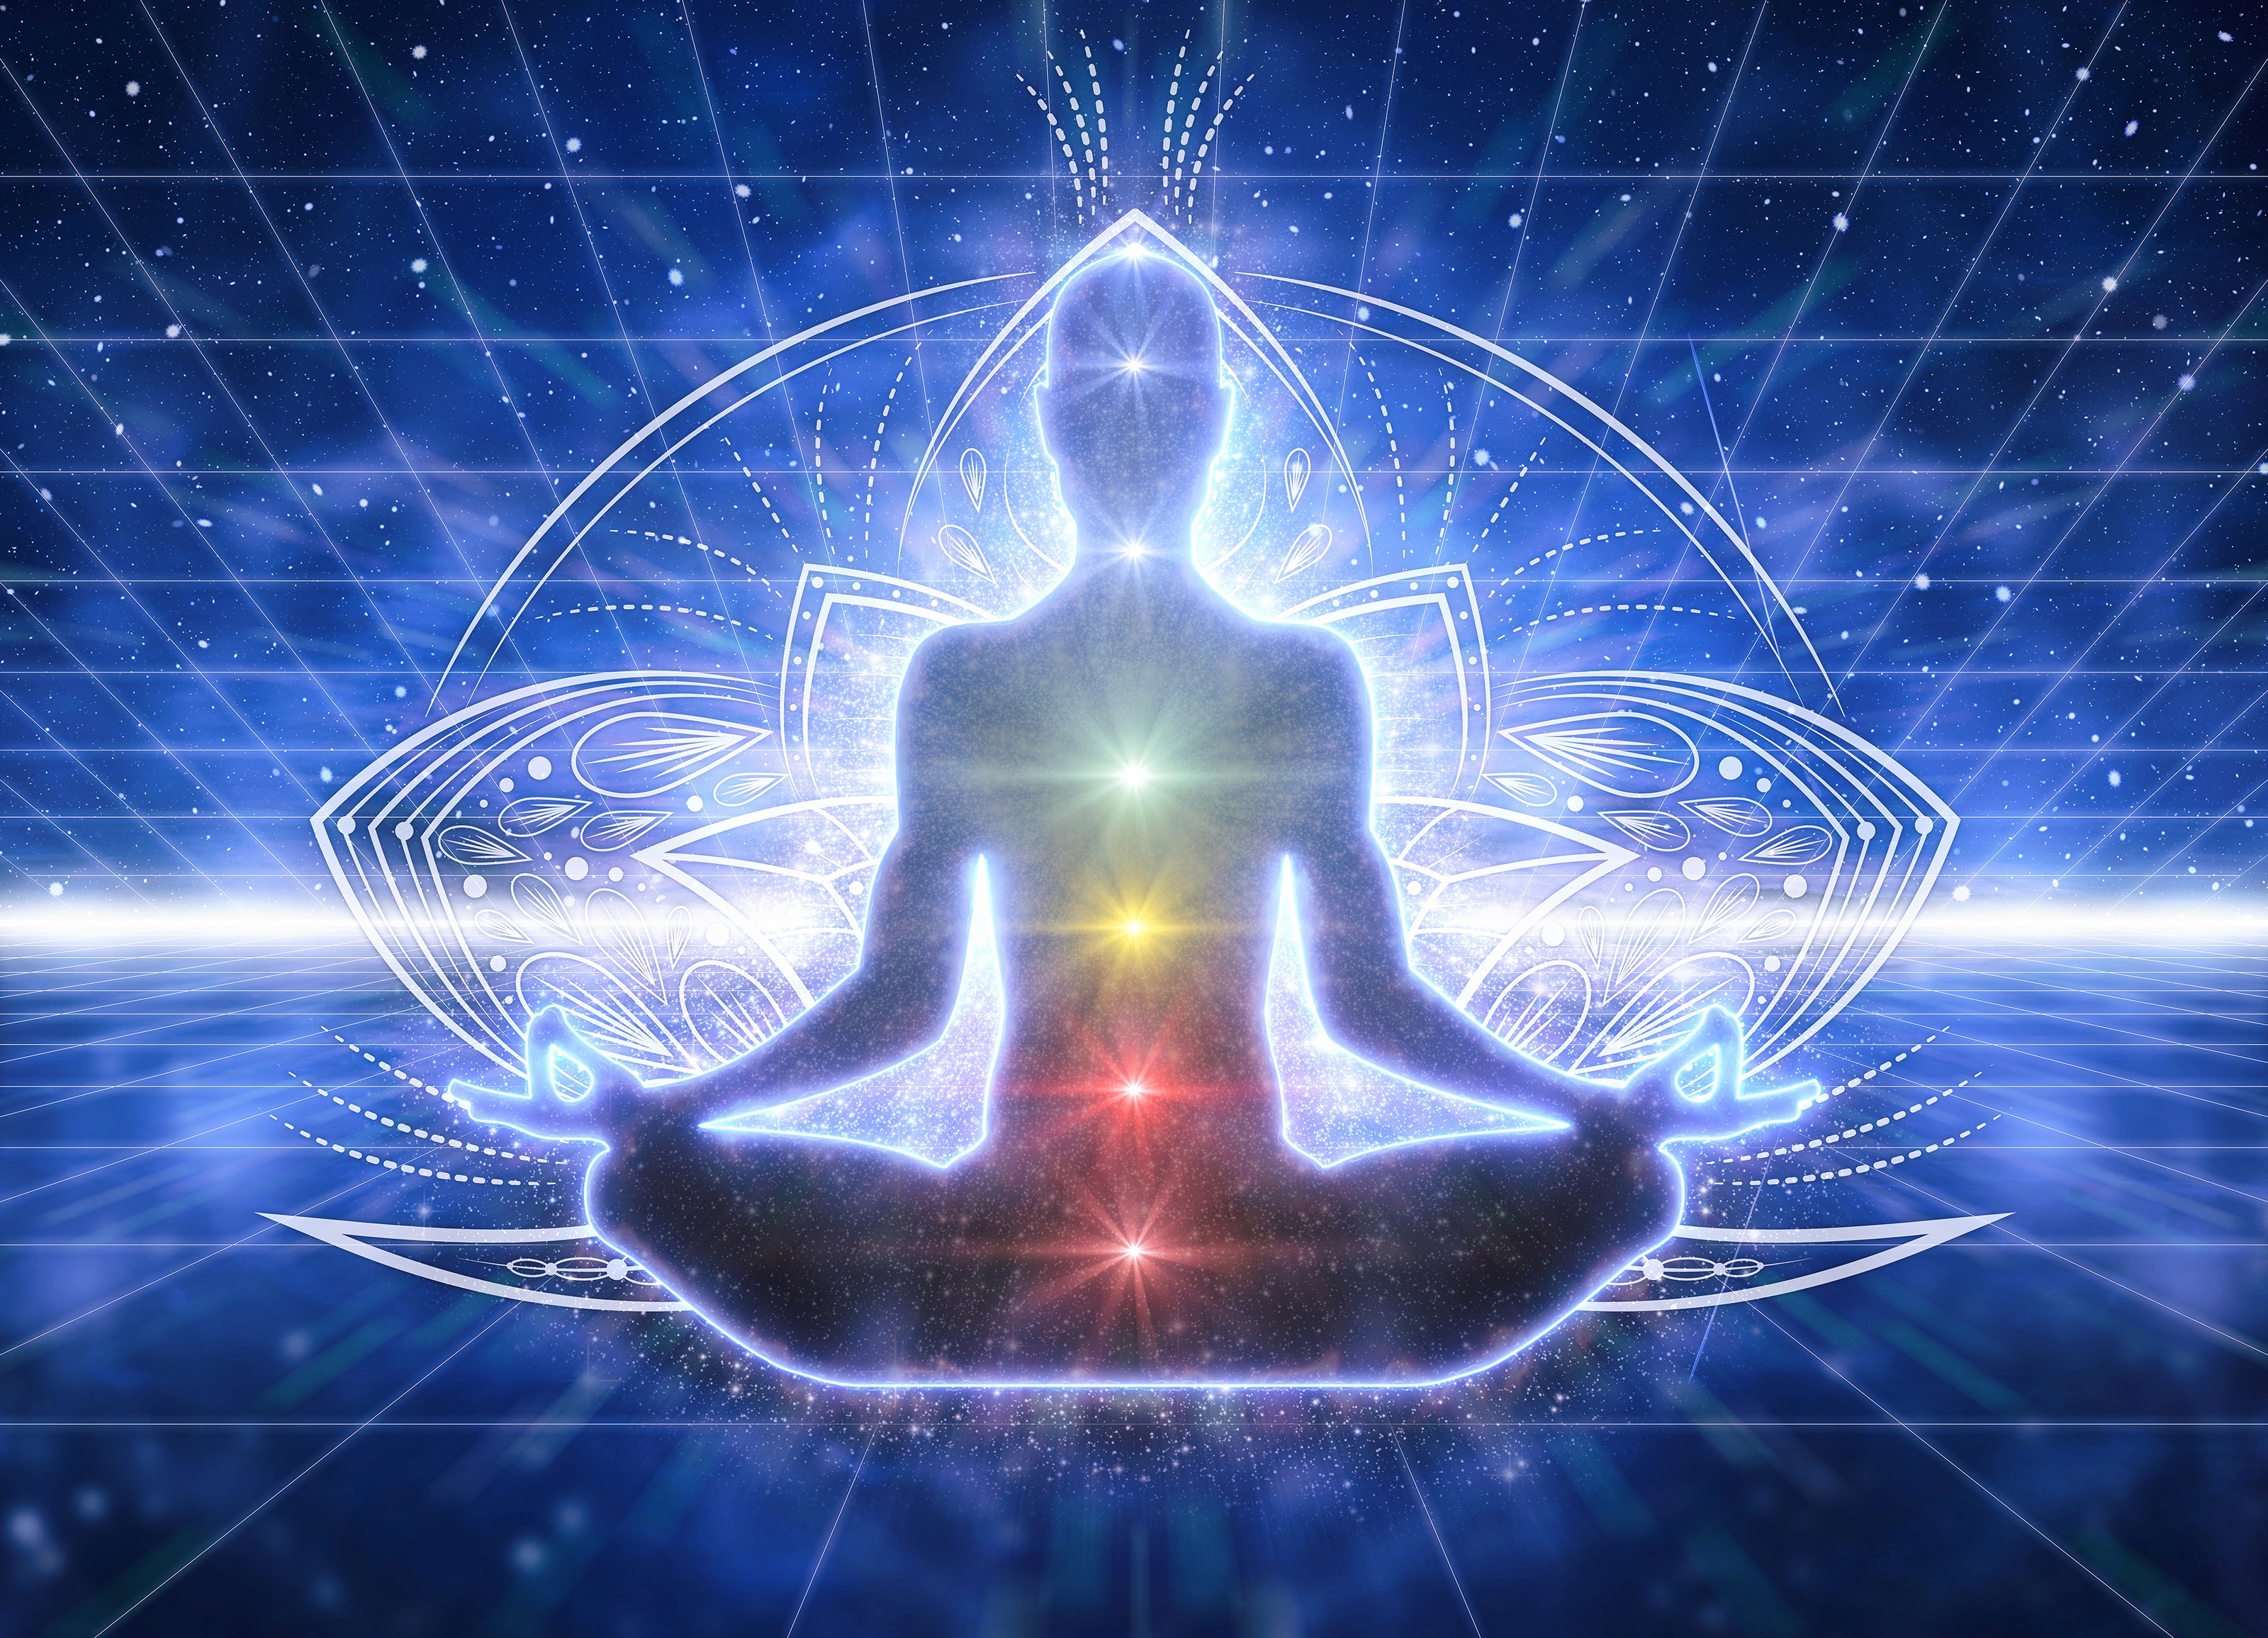 spiritualism, awakening, meditation